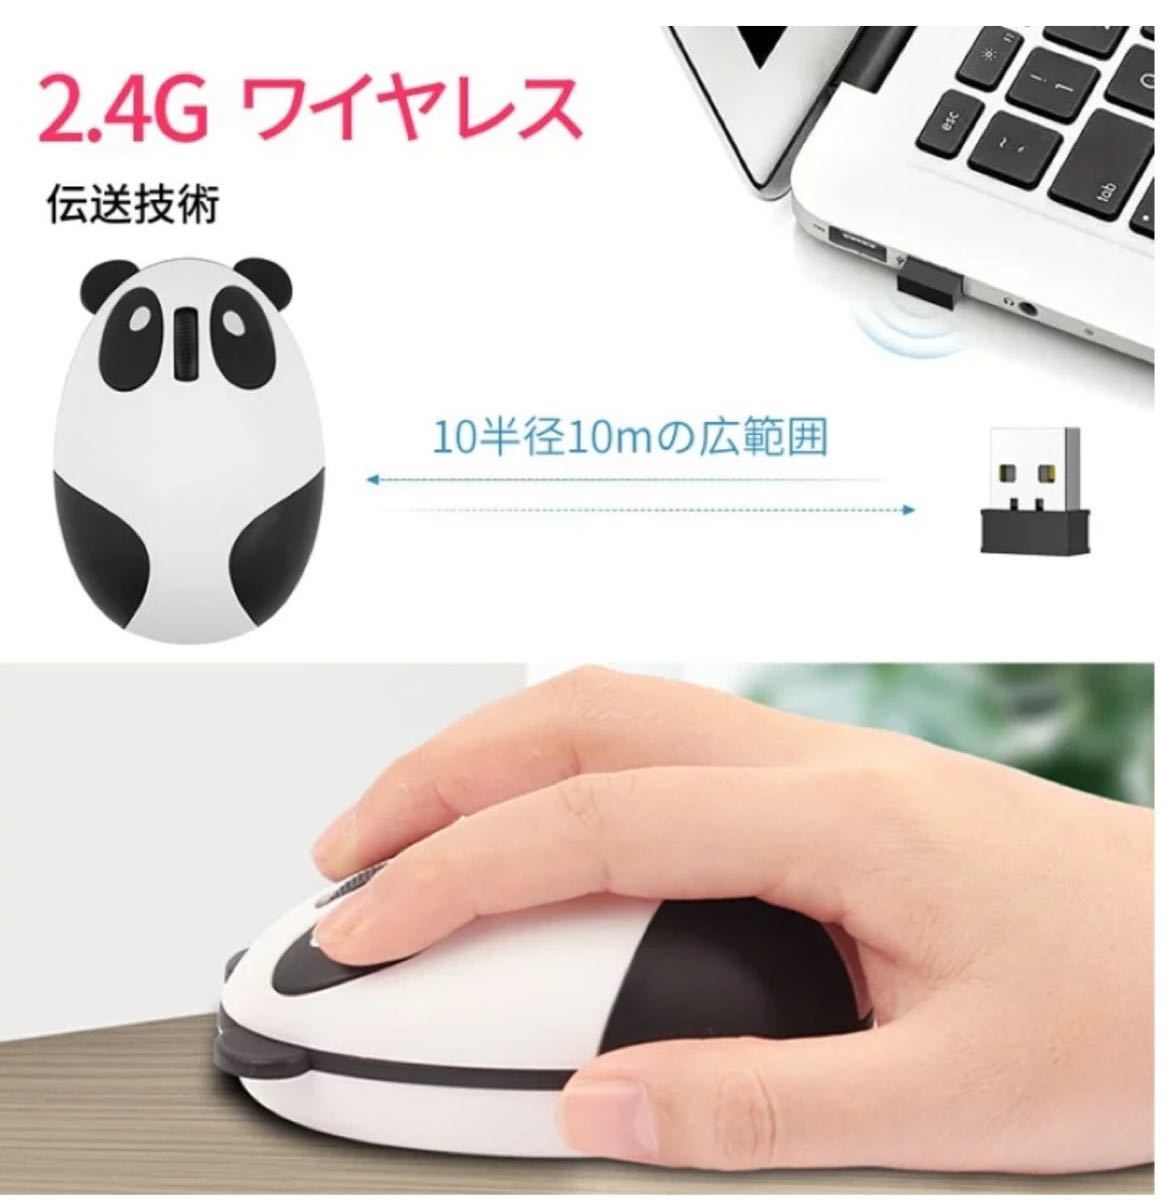 ワイヤレスマウス コンパクト 軽量 USB パソコン周辺機器 充電式